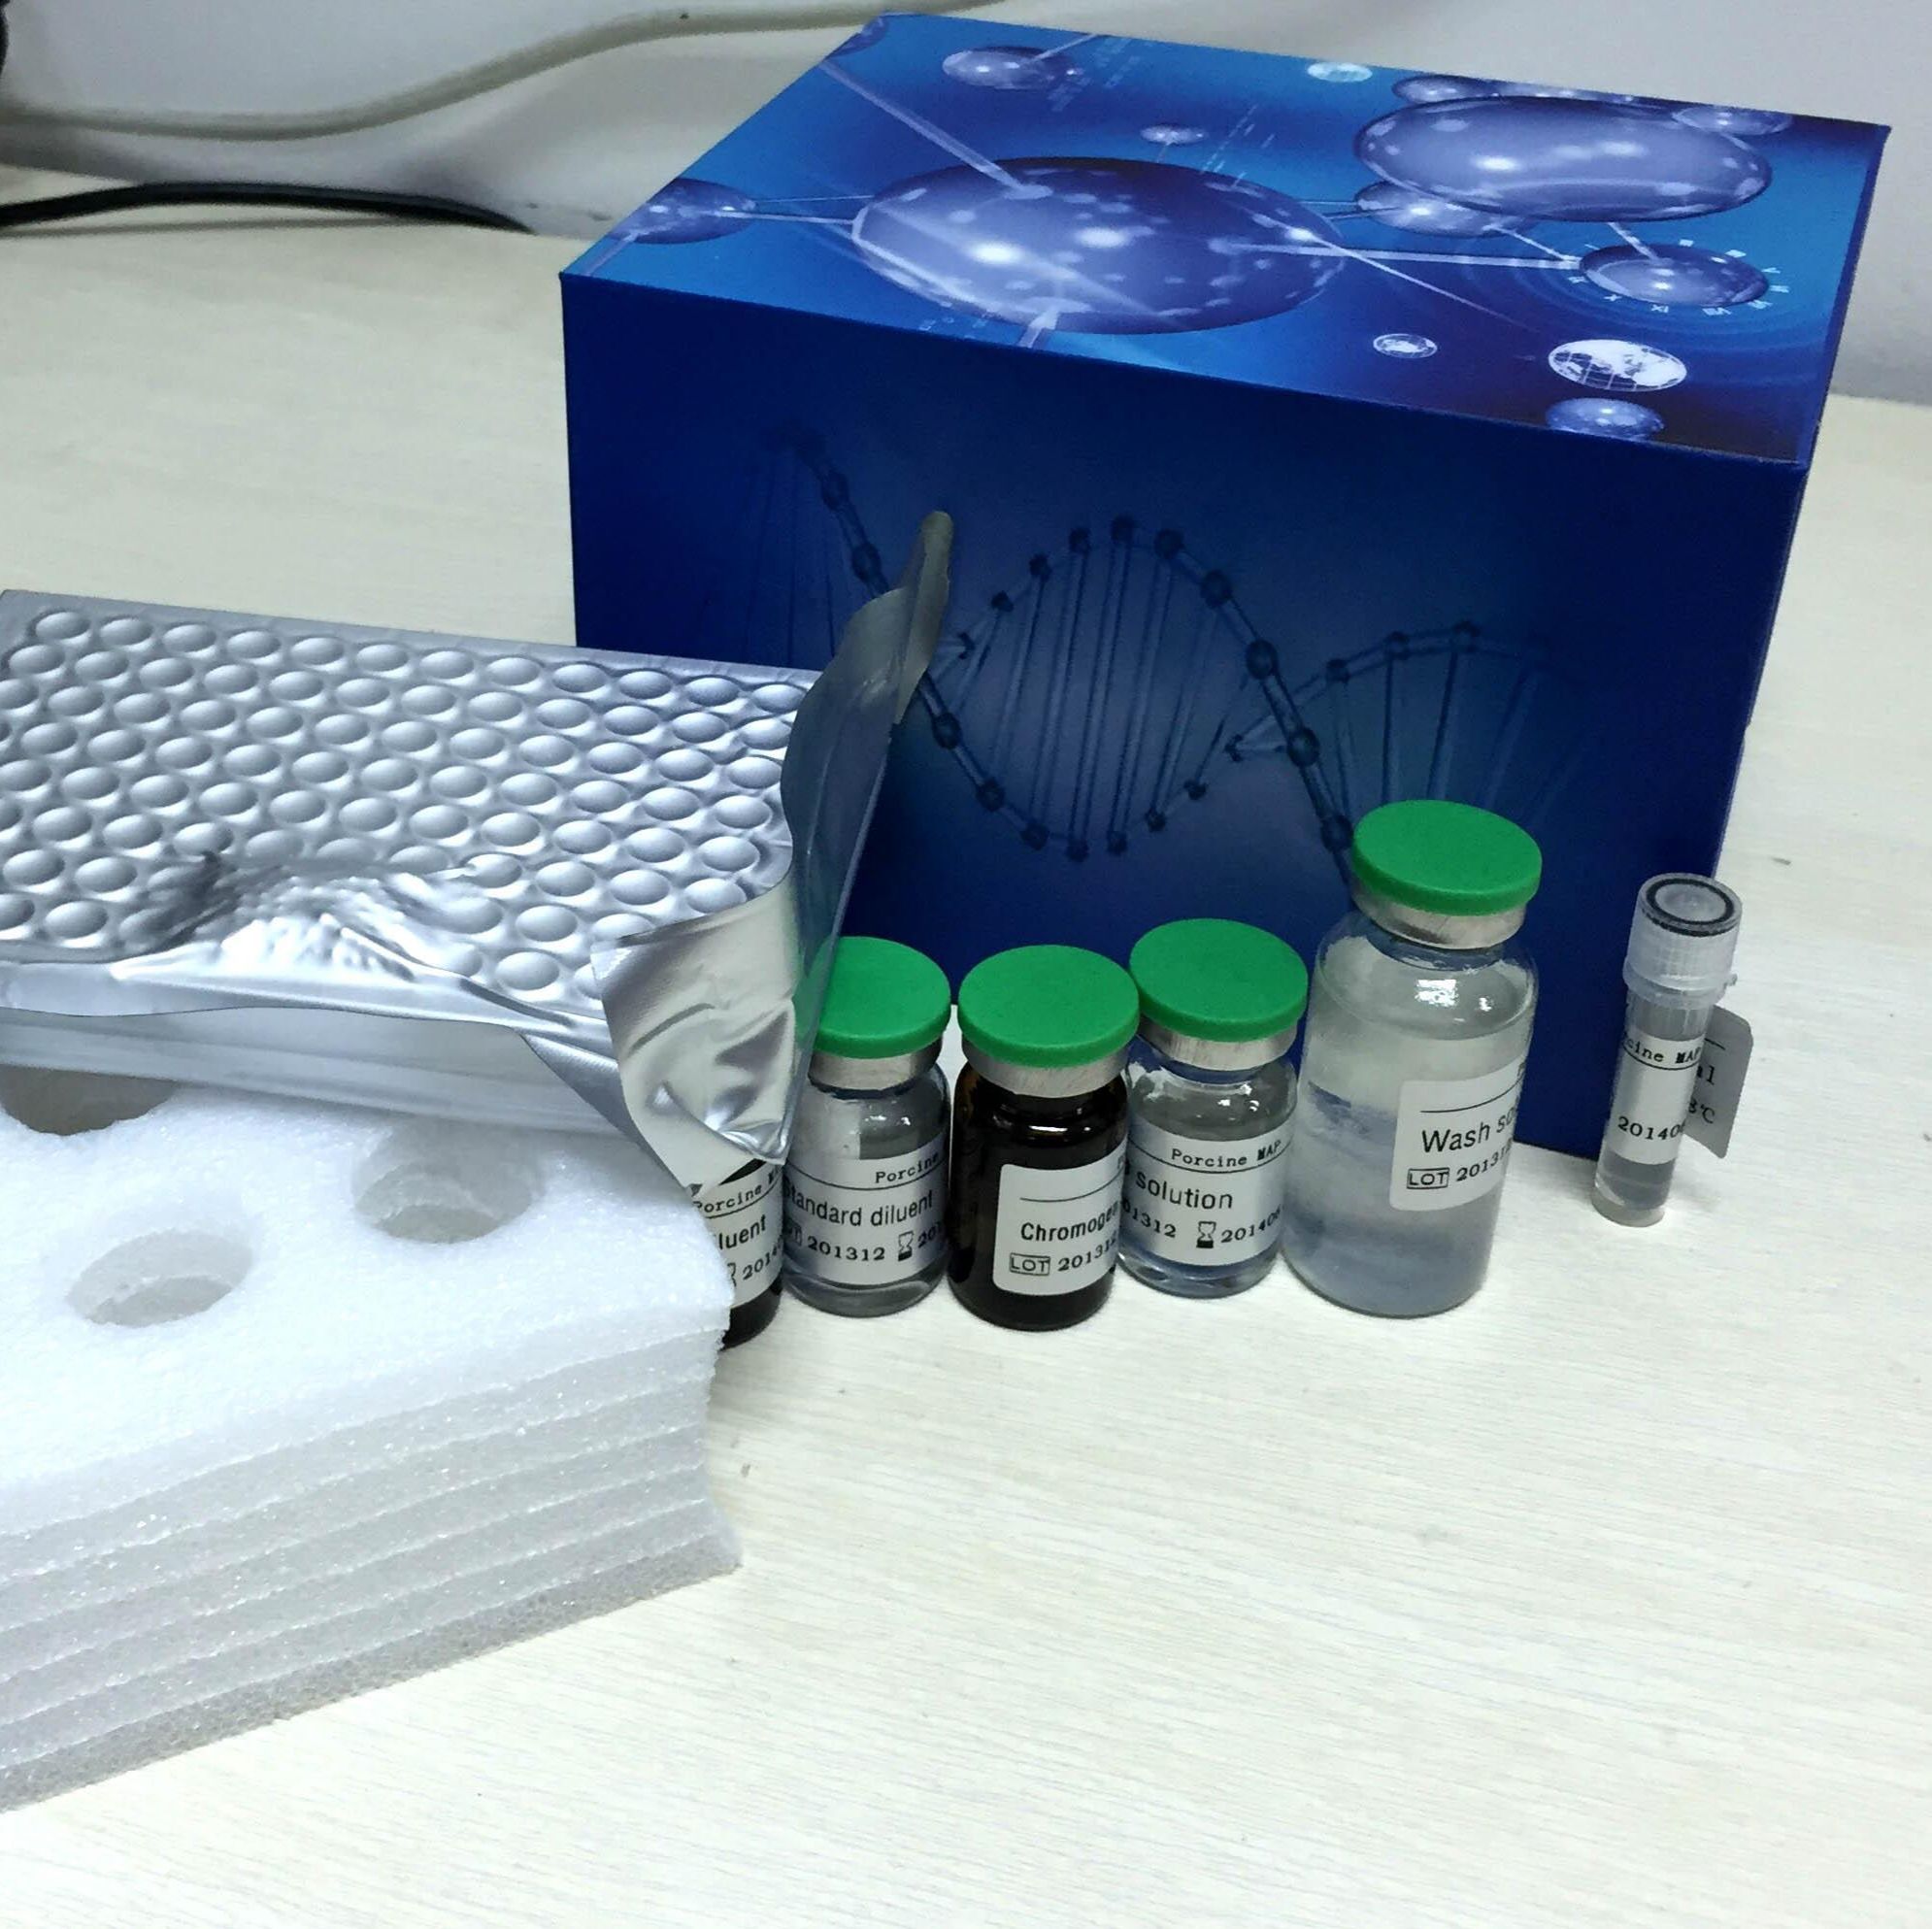 Annexin V-FITC/ PI荧光双染细胞凋亡检测试剂盒